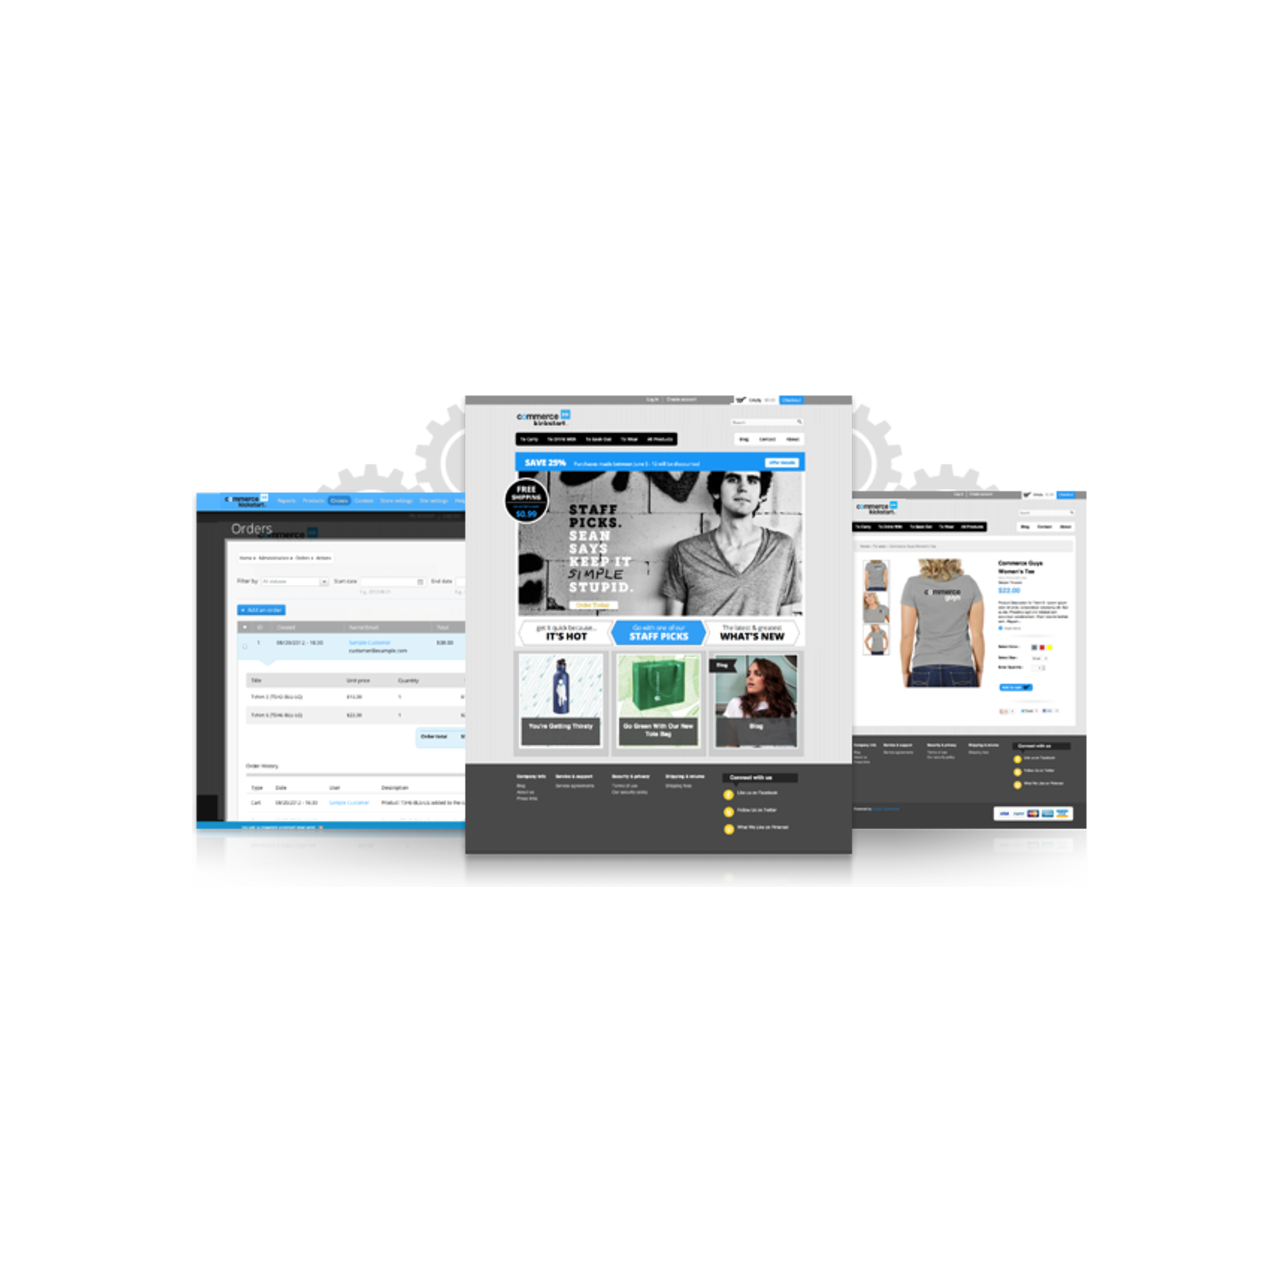 drupal commerce image display